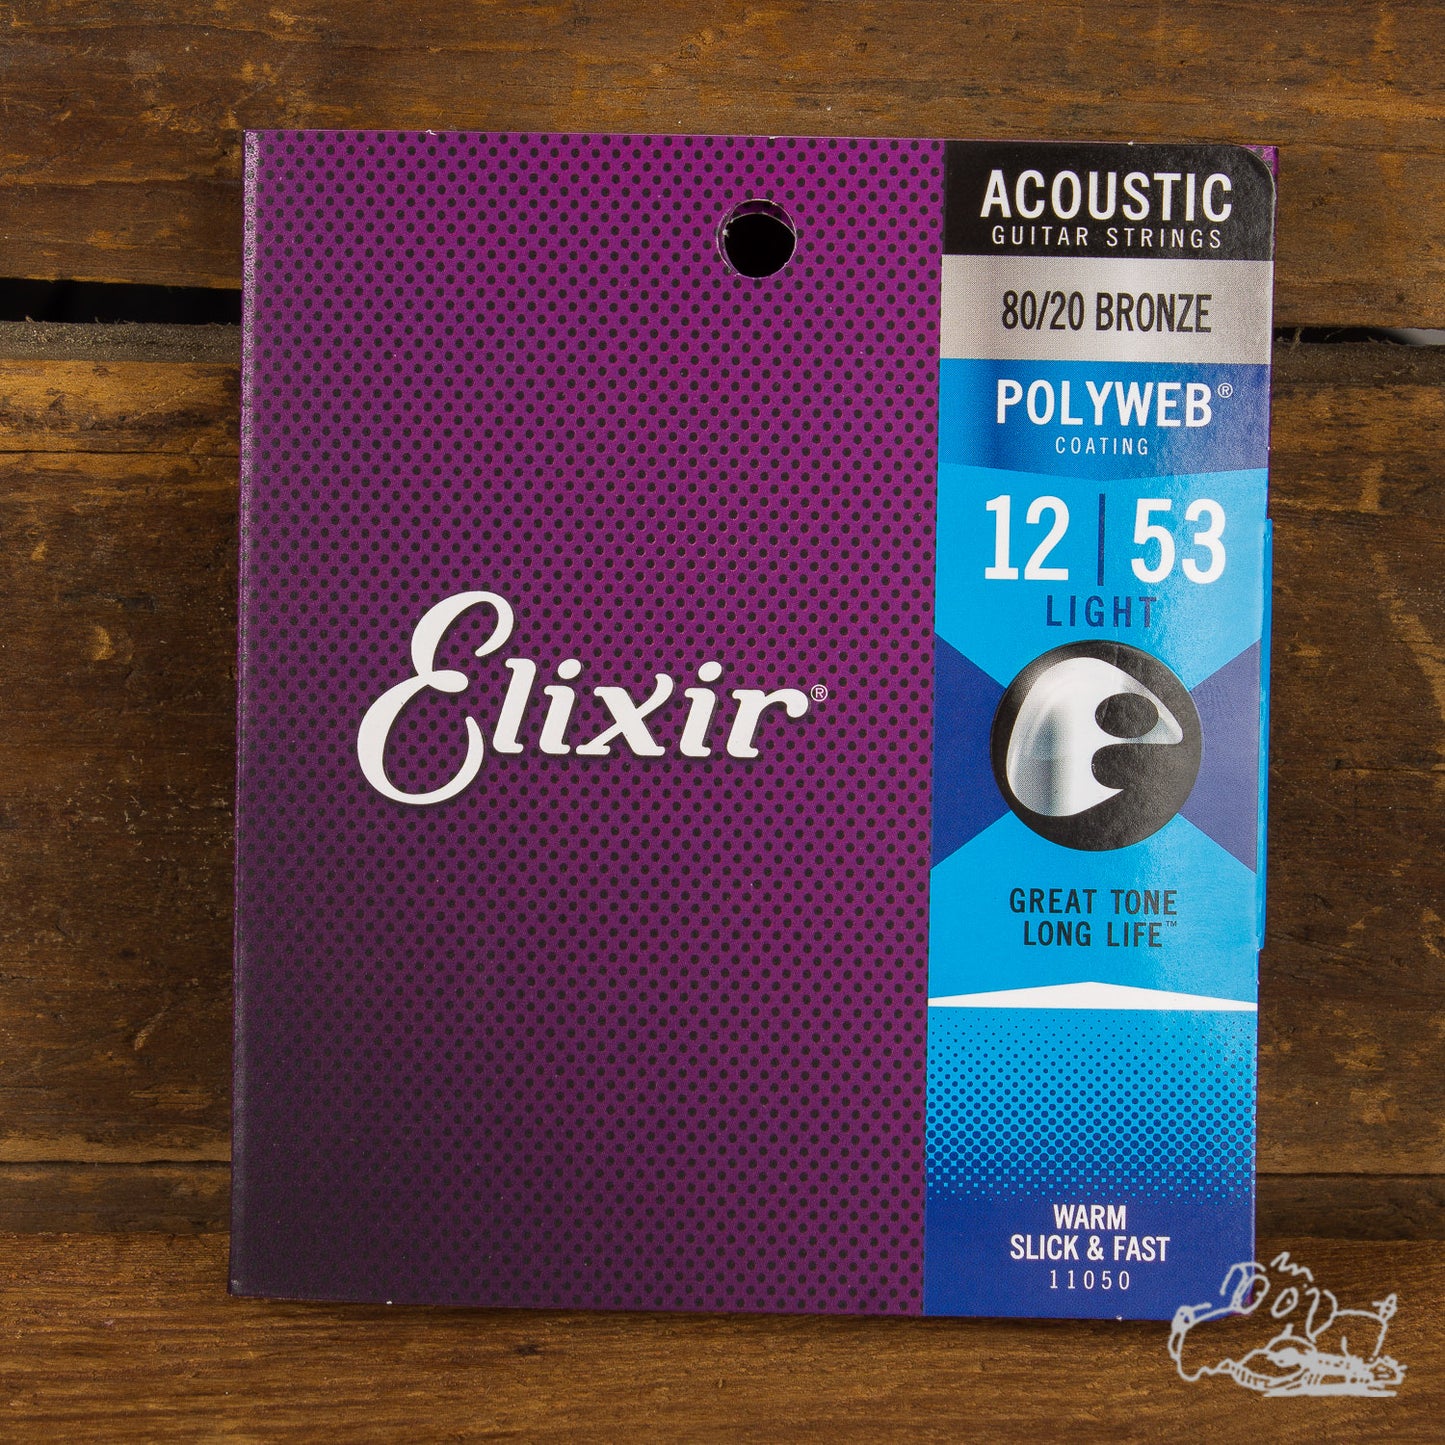 Elixir 80/20 Golden Bronze Acoustic Guitar Strings 12-53